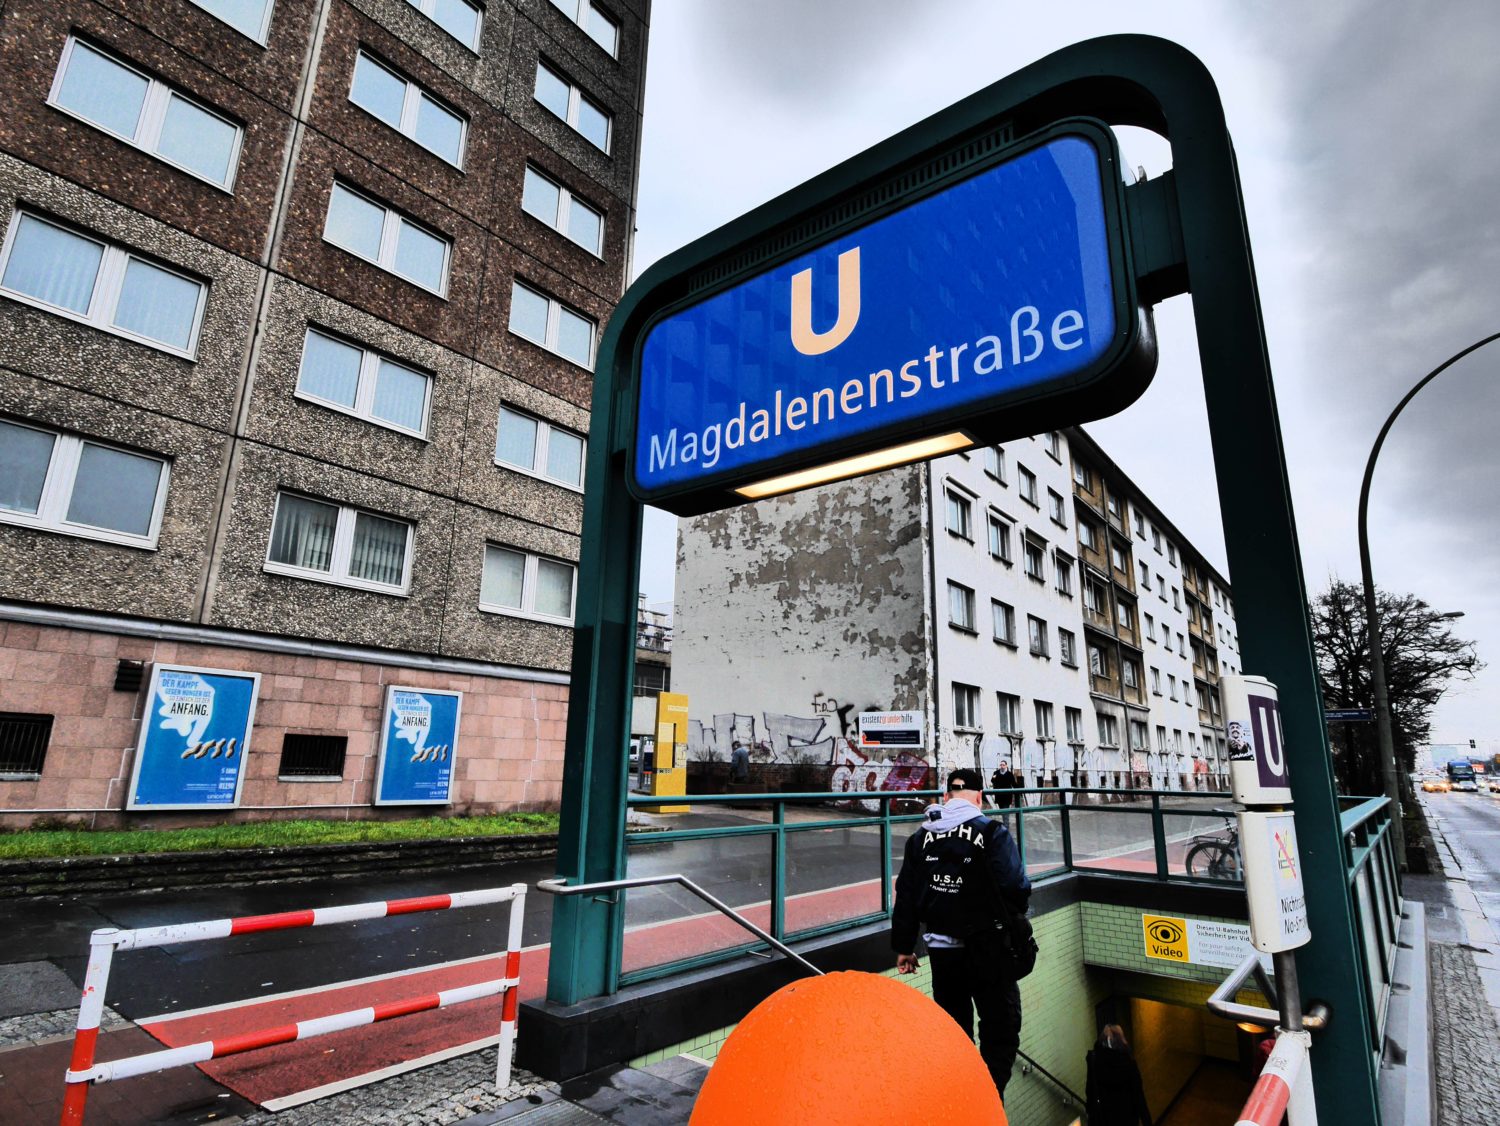 U5, Bahnhof Magdalenenstraße: Die Gebäudekomplexe hier waren einst das Hauptquartier des Ministeriums für Staatssicherheit. Foto: Imago Images/Jürgen Ritter